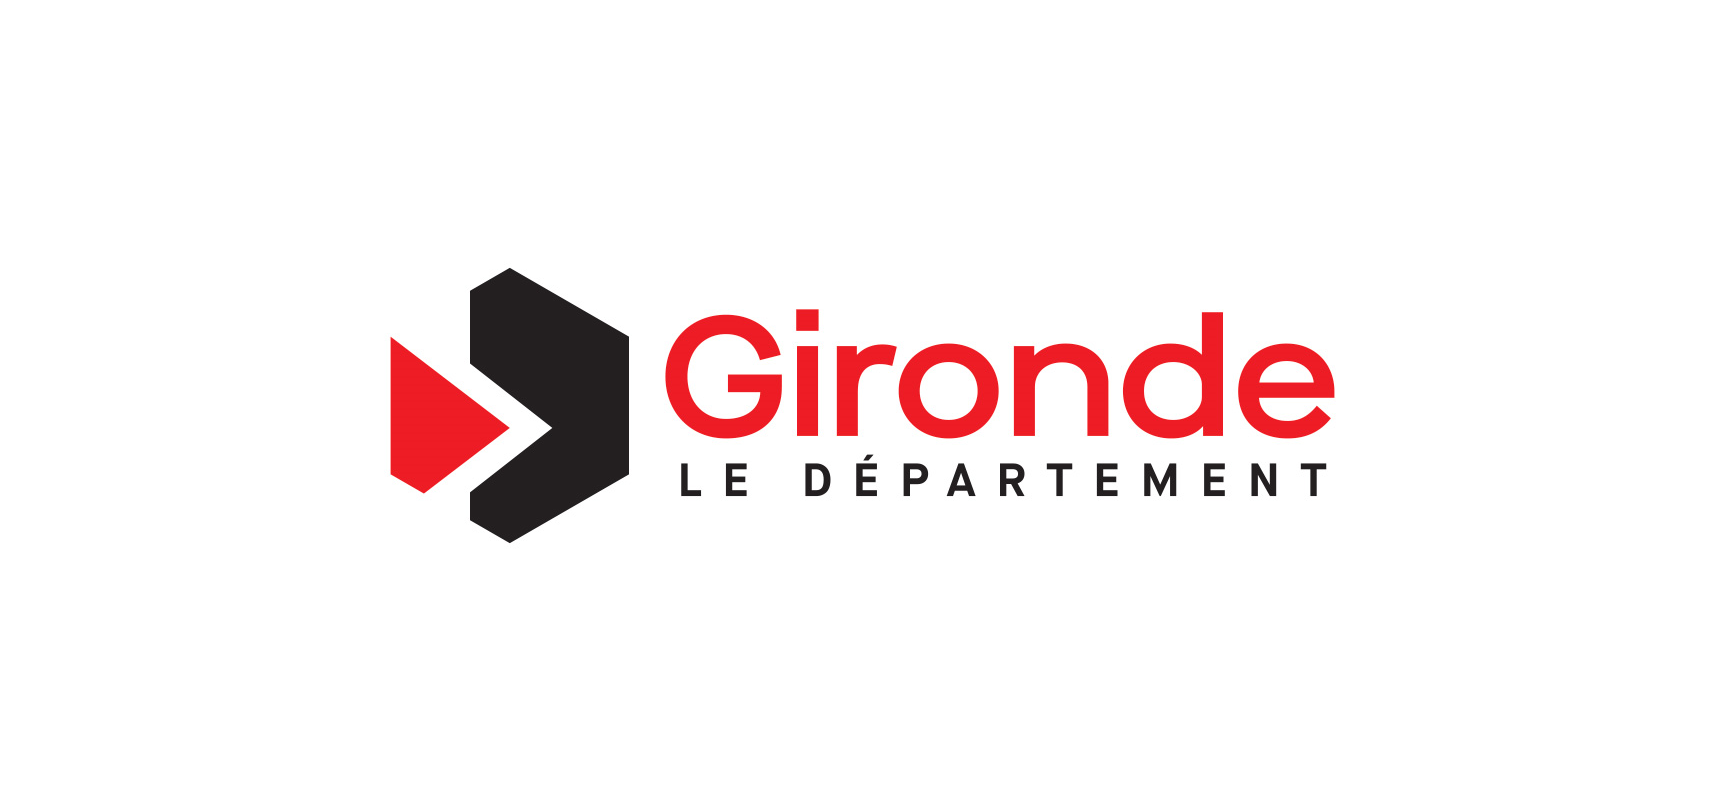 Le logo | Gironde.FR